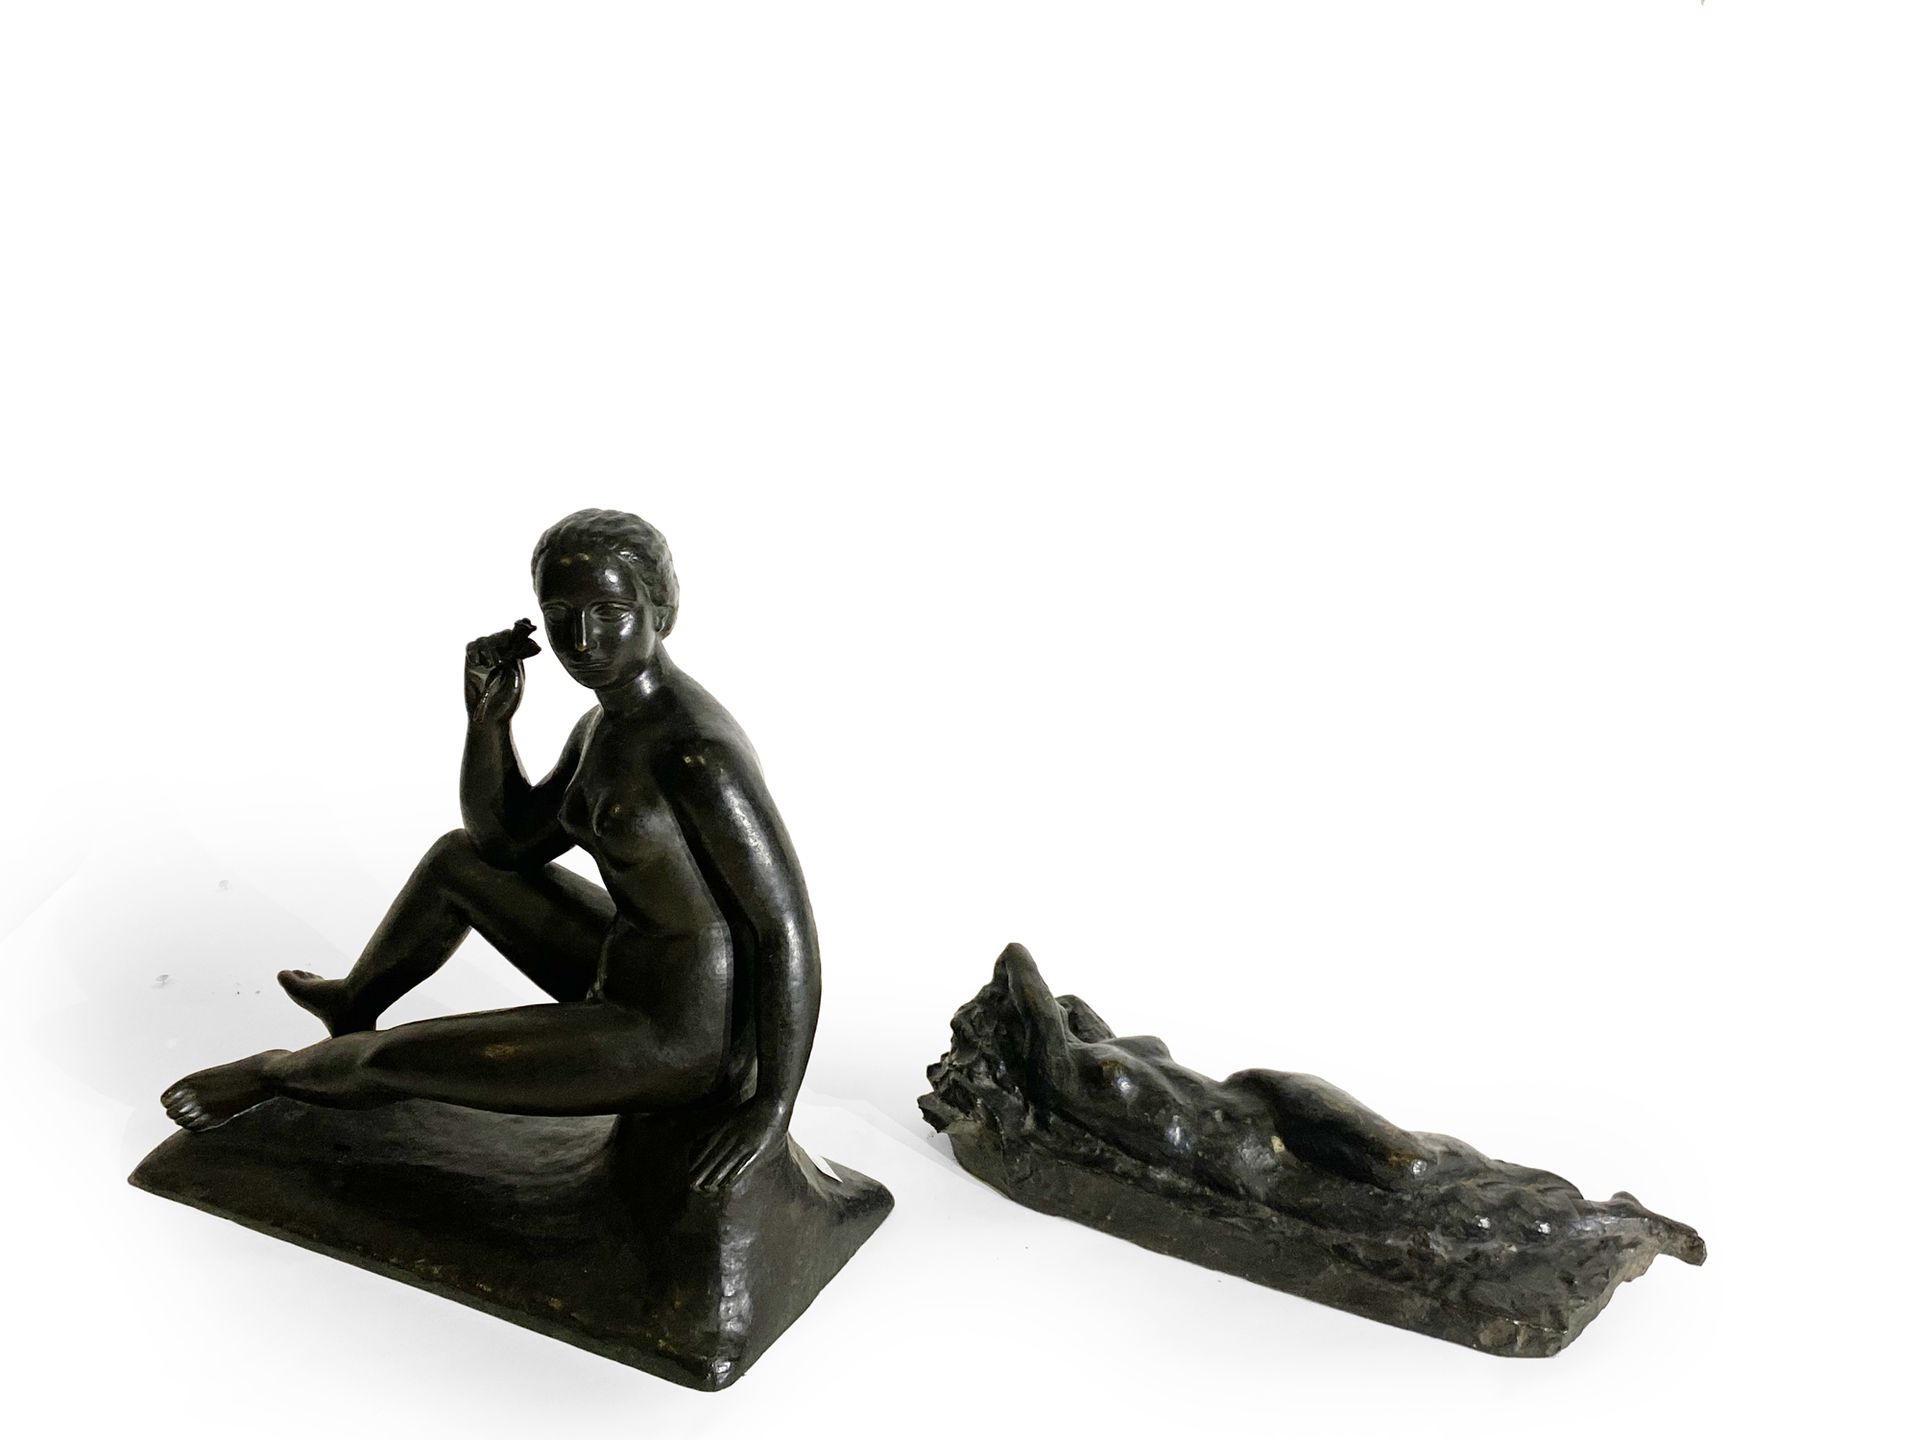 Null Set bestehend aus zwei Skulpturen : 

- Eine Bronzeskulptur, die einen lieg&hellip;